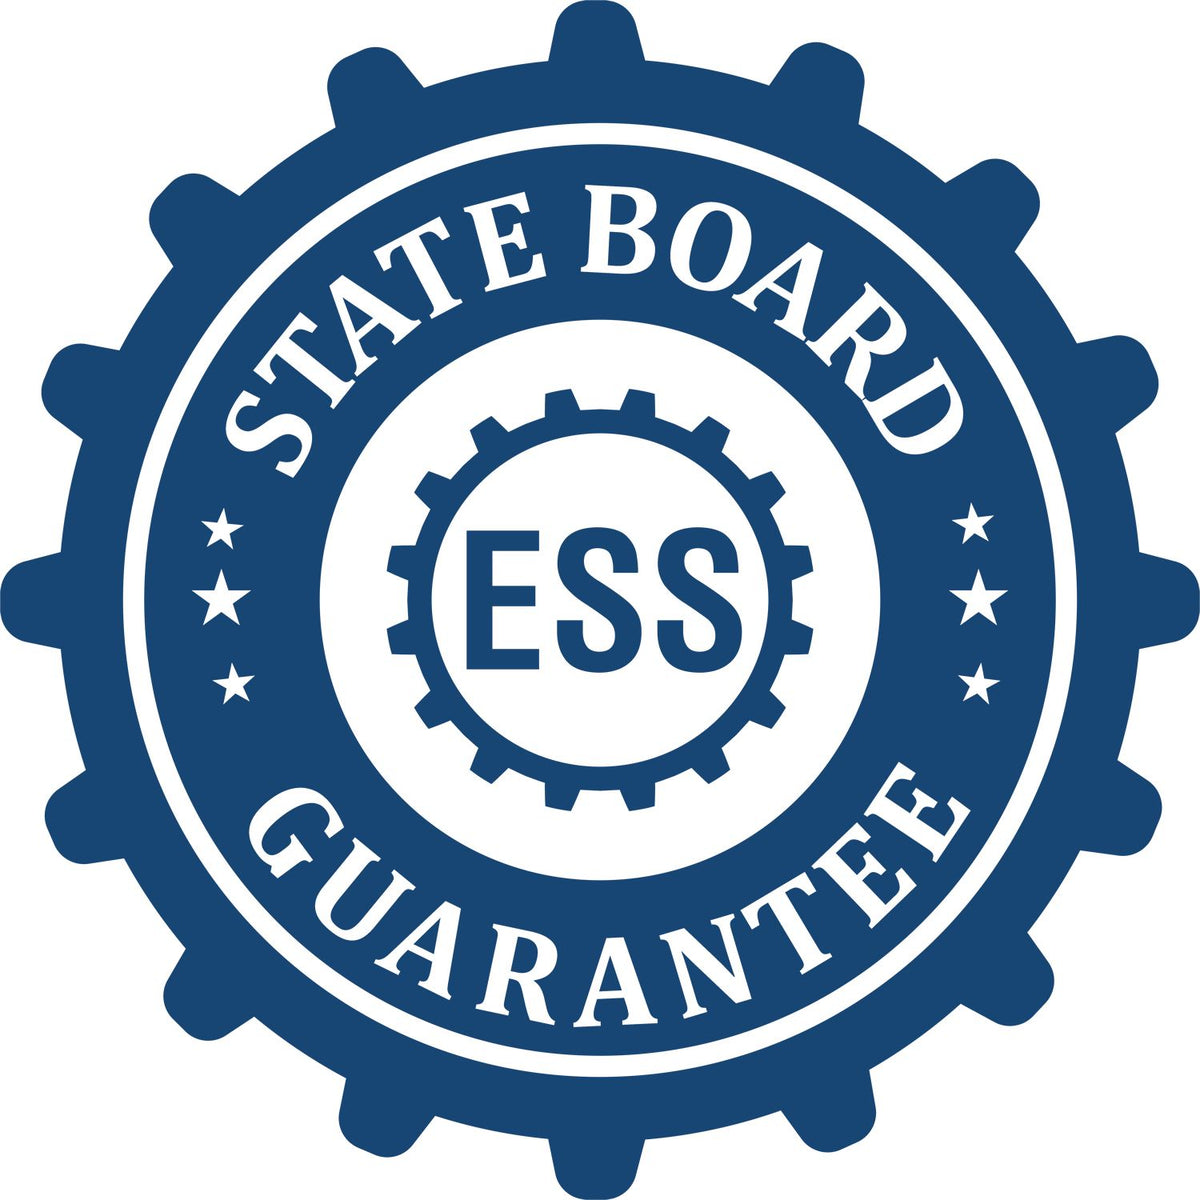 Land Surveyor Regular Rubber Stamp of Seal 3005LS State Board Guarantee